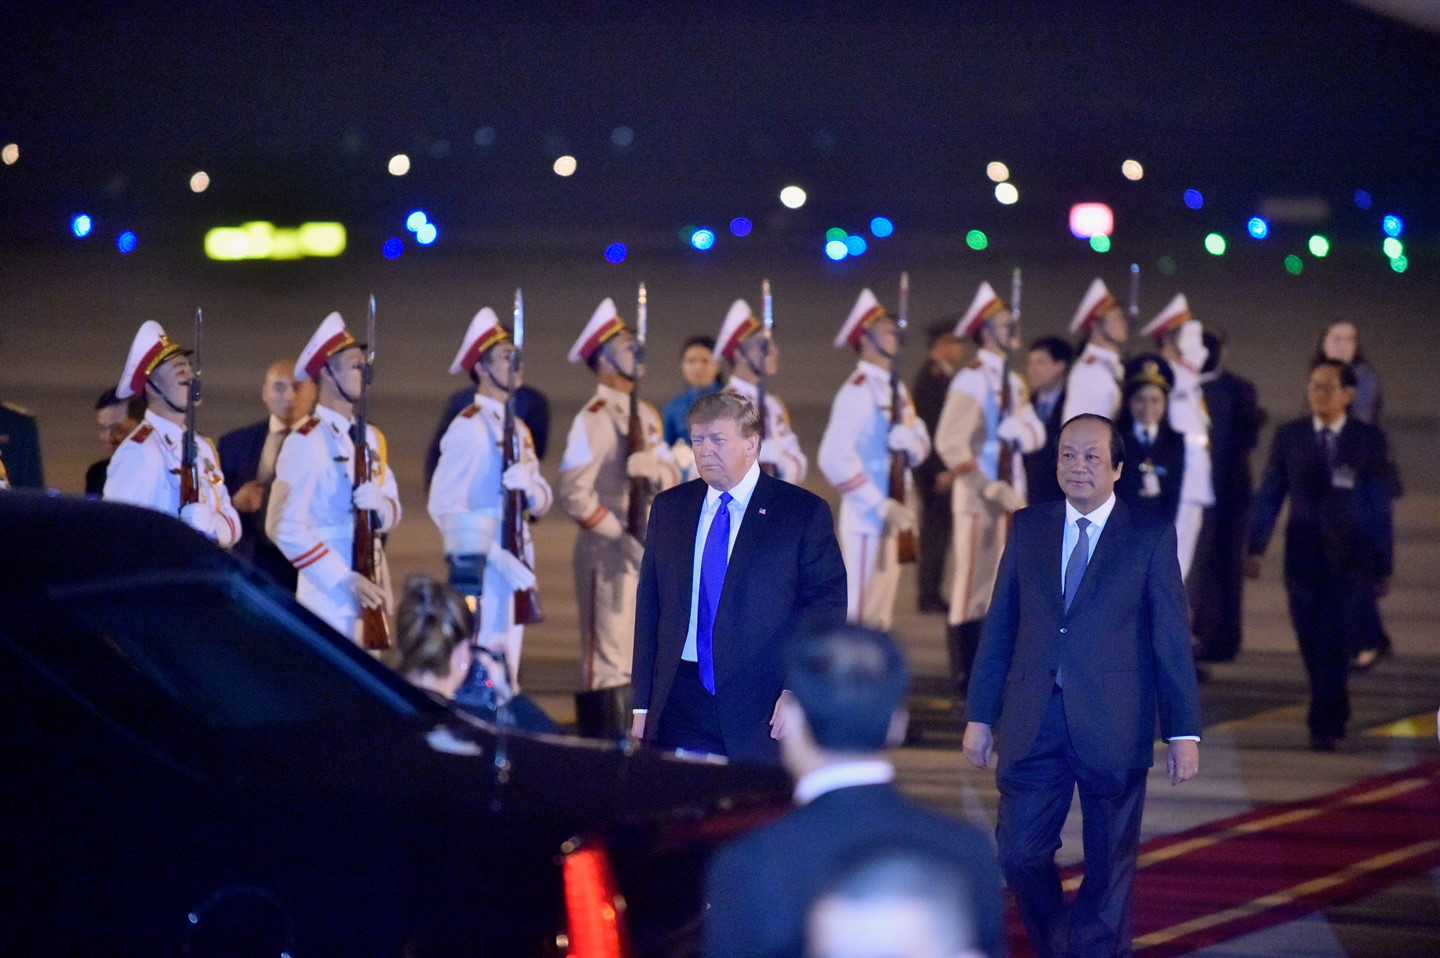 Trước đó, Ngoại trưởng Mỹ Mike Pompeo đã đến Hà Nội sáng 26/2, một ngày trước hội nghị thượng đỉnh lần hai giữa Tổng thống Mỹ Donald Trump và Chủ tịch Triều Tiên Kim Jong Un. Ảnh: VGP